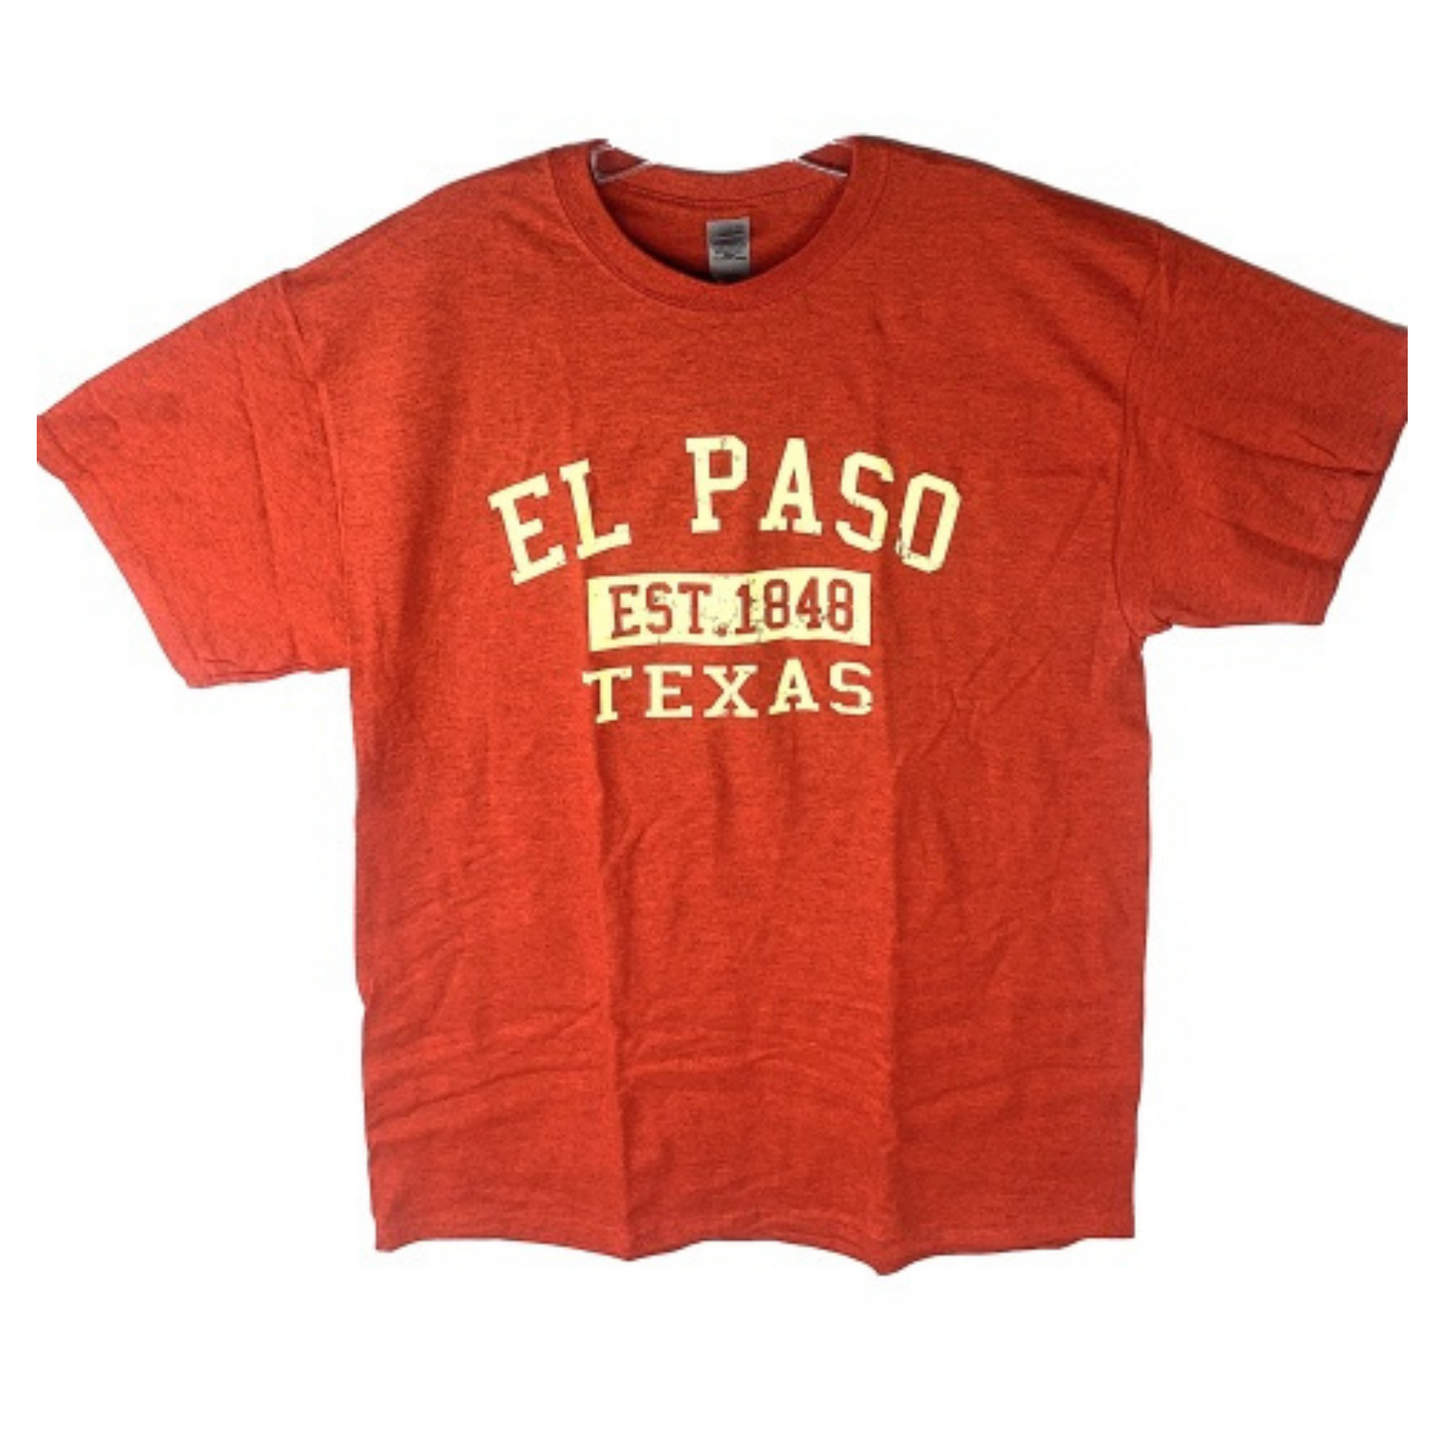 Tee - ELP Orange-So El Paso